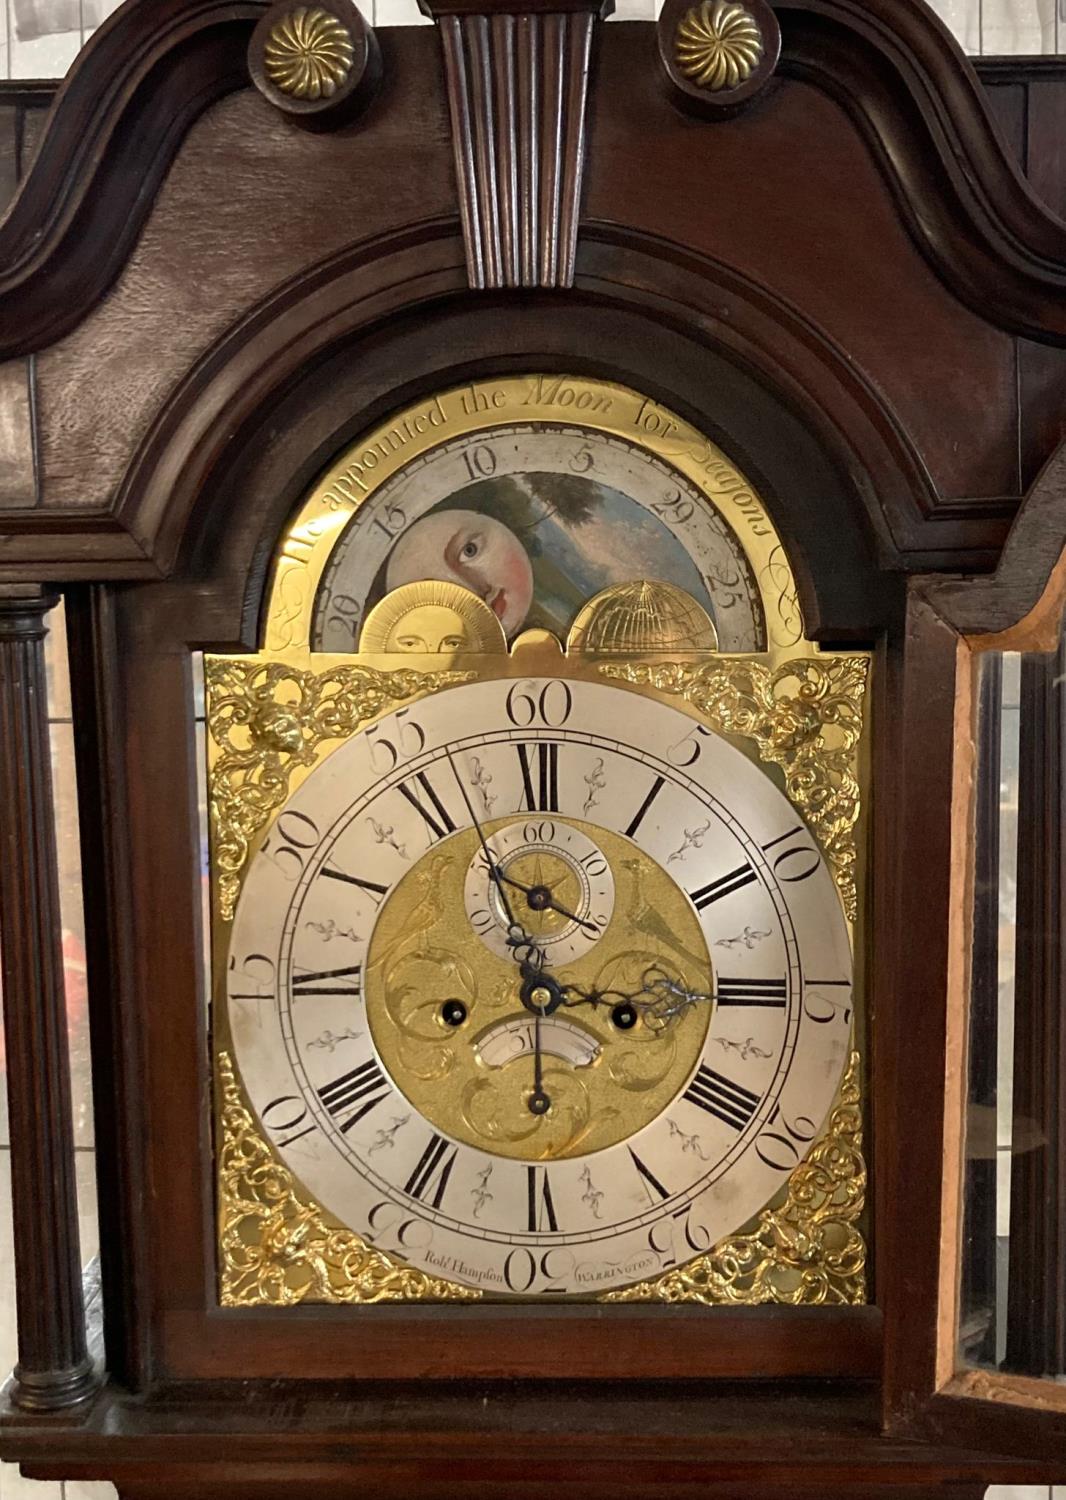 Late 18th/early 19th century mahogany long case clock marked 'Robert Hampton, Warrington', having